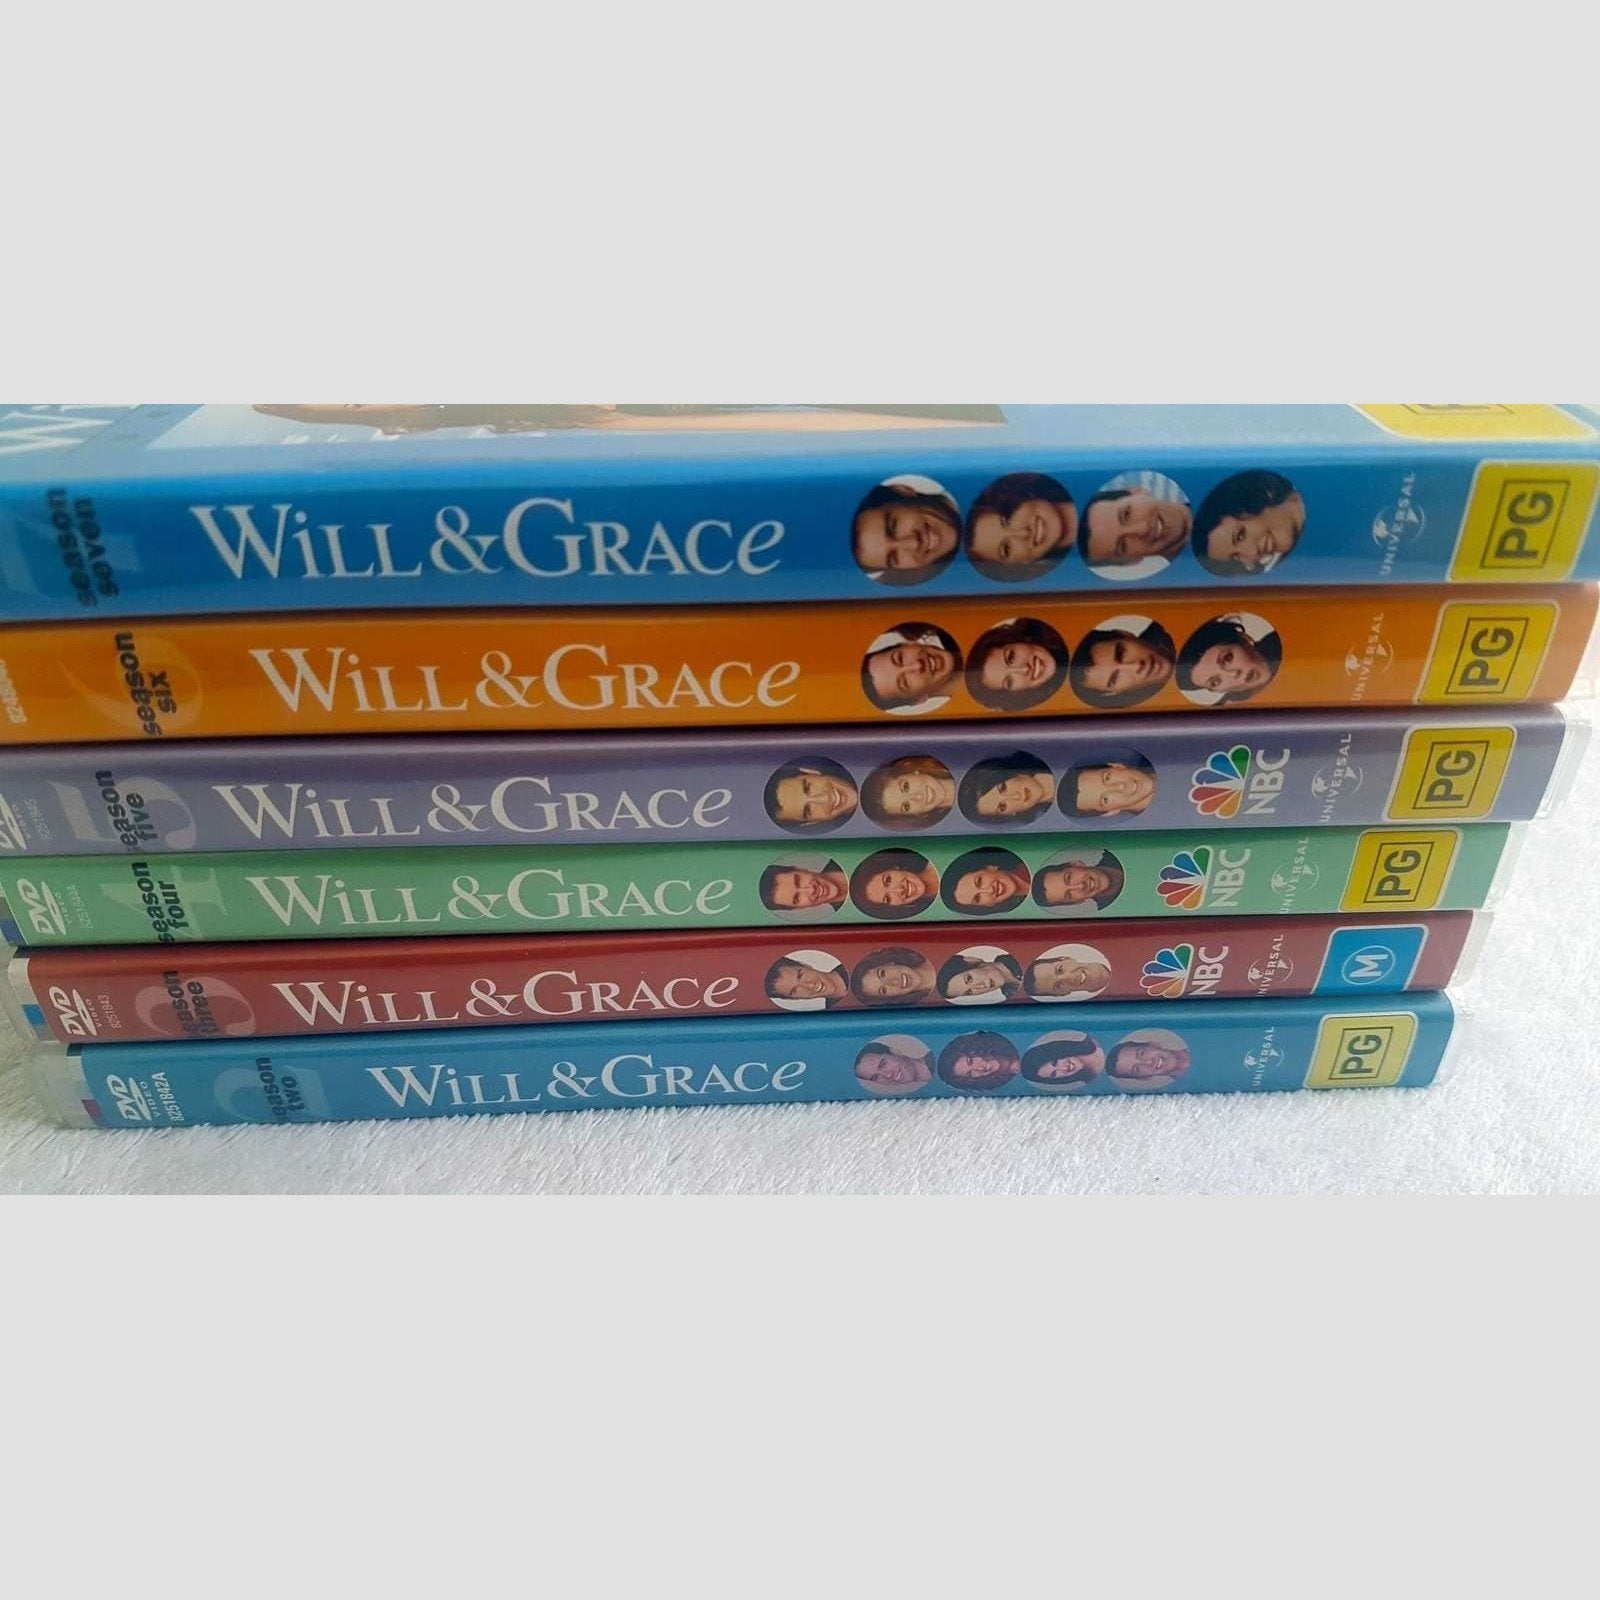 Will & Grace Seasons 2-7